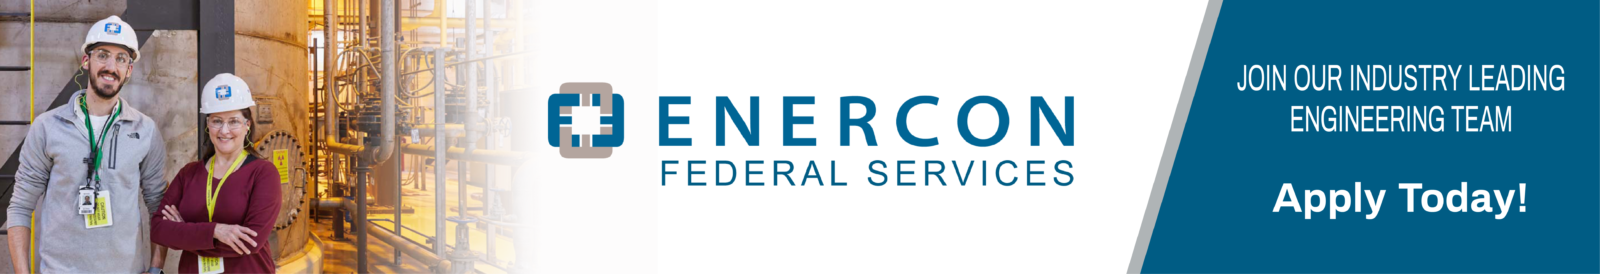 Enercon Federal Services